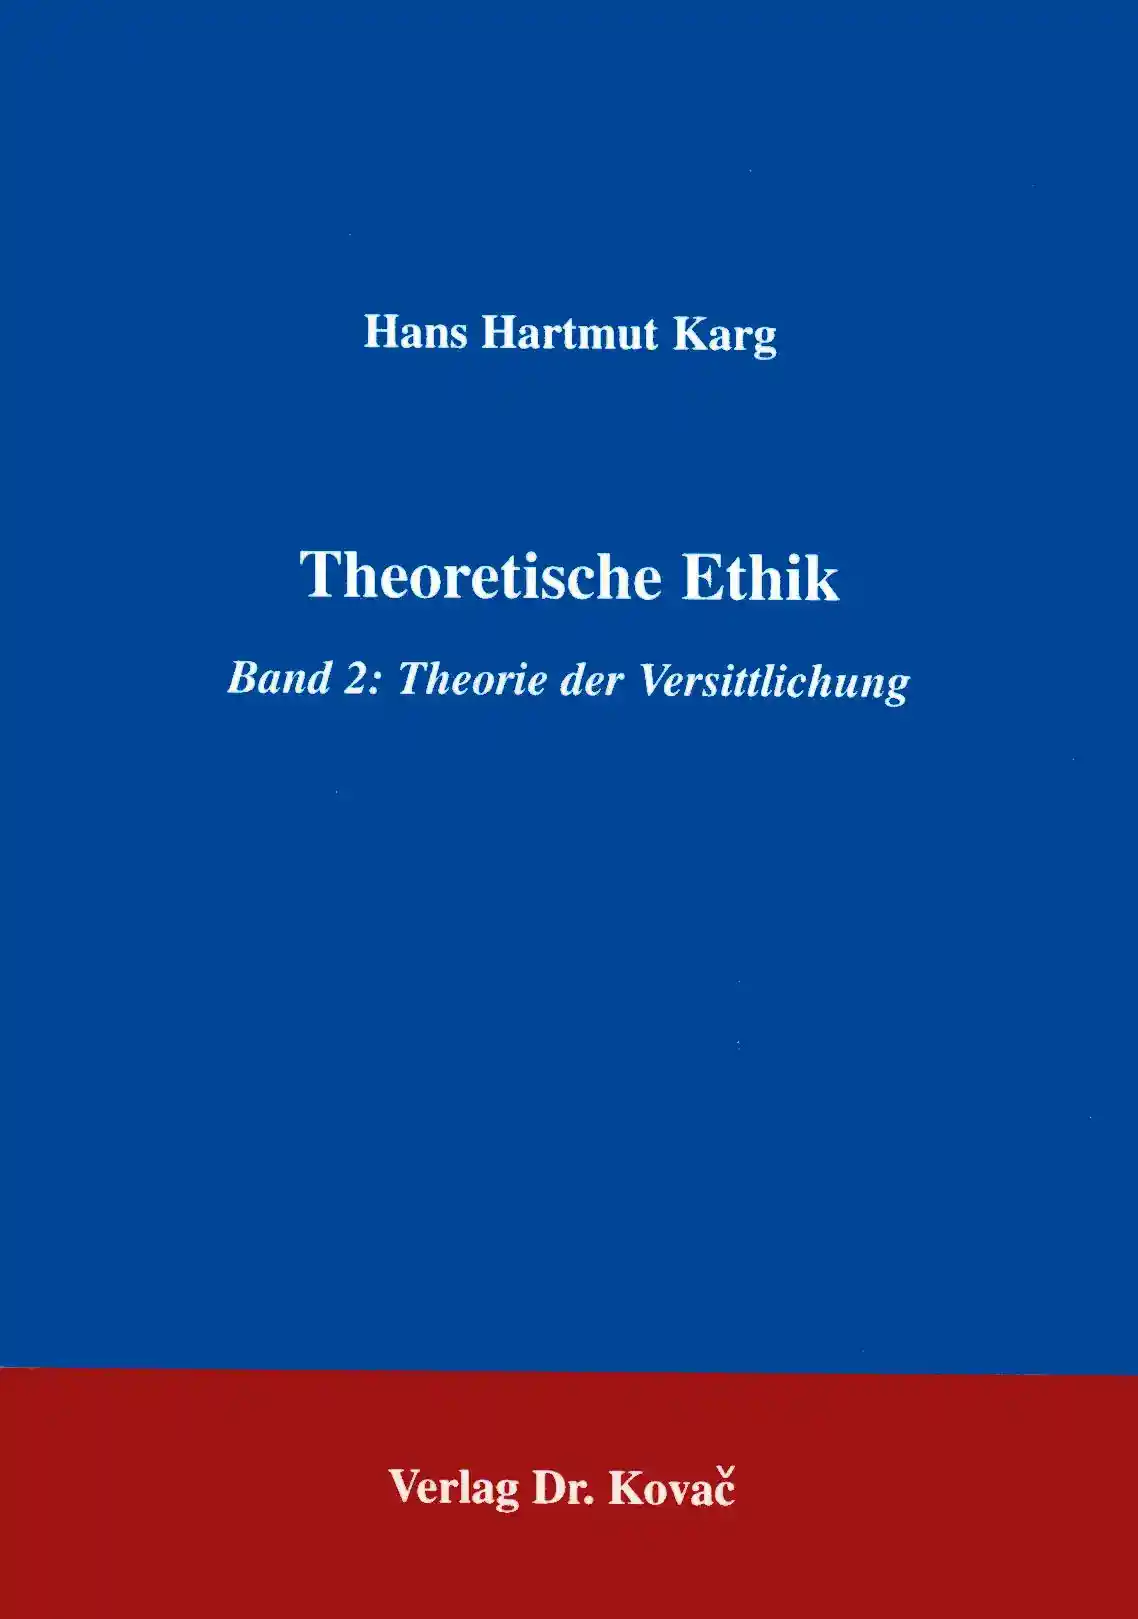  Forschungsarbeit: Theoretische Ethik